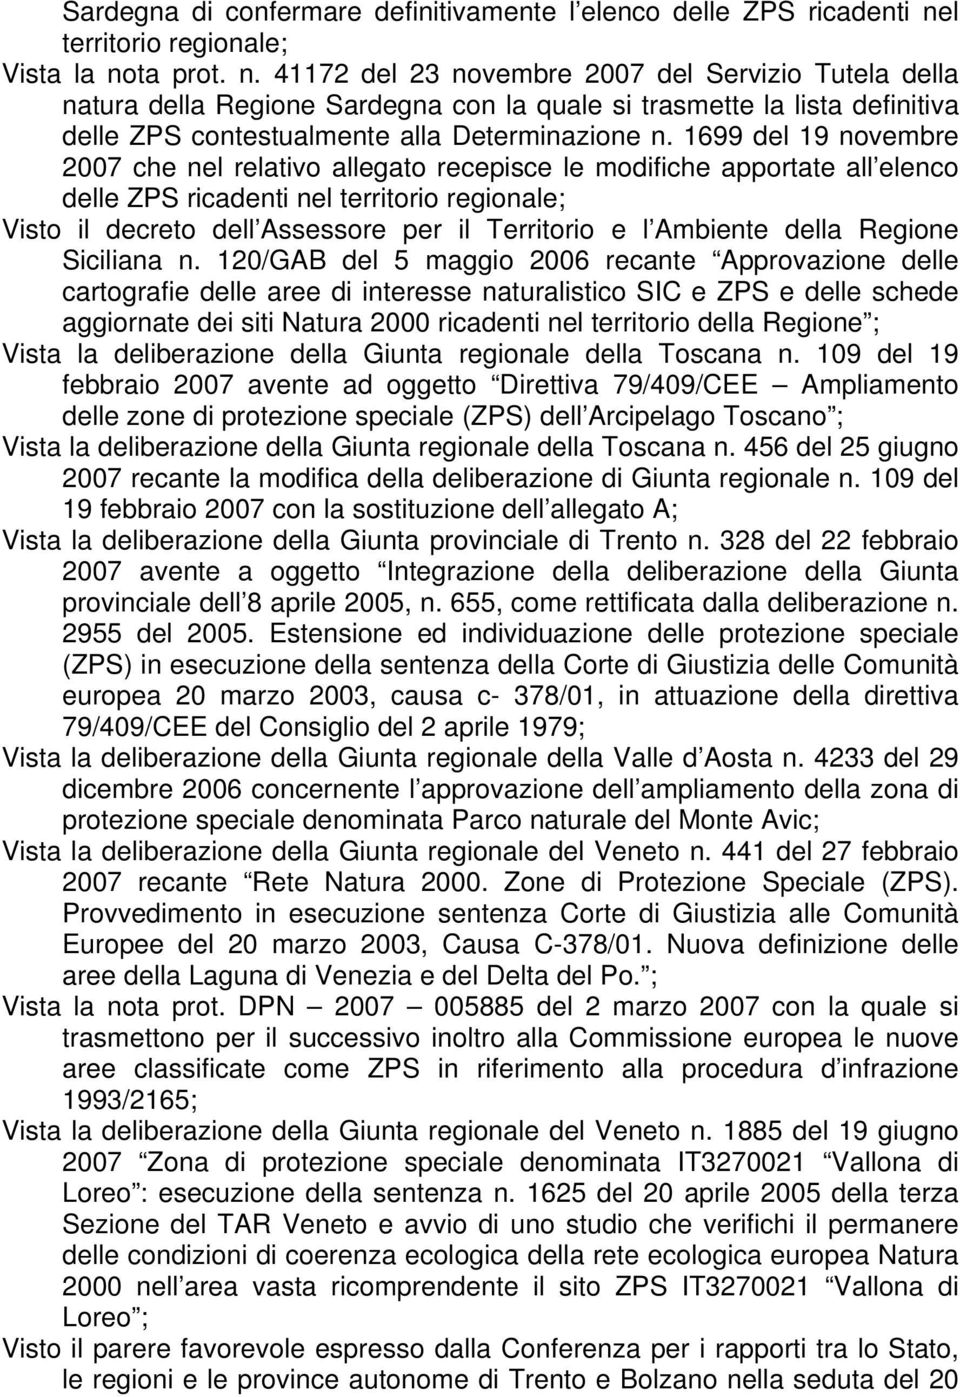 ta prot. n. 41172 del 23 novembre 2007 del Servizio Tutela della natura della Regione Sardegna con la quale si trasmette la lista definitiva delle ZPS contestualmente alla Determinazione n.